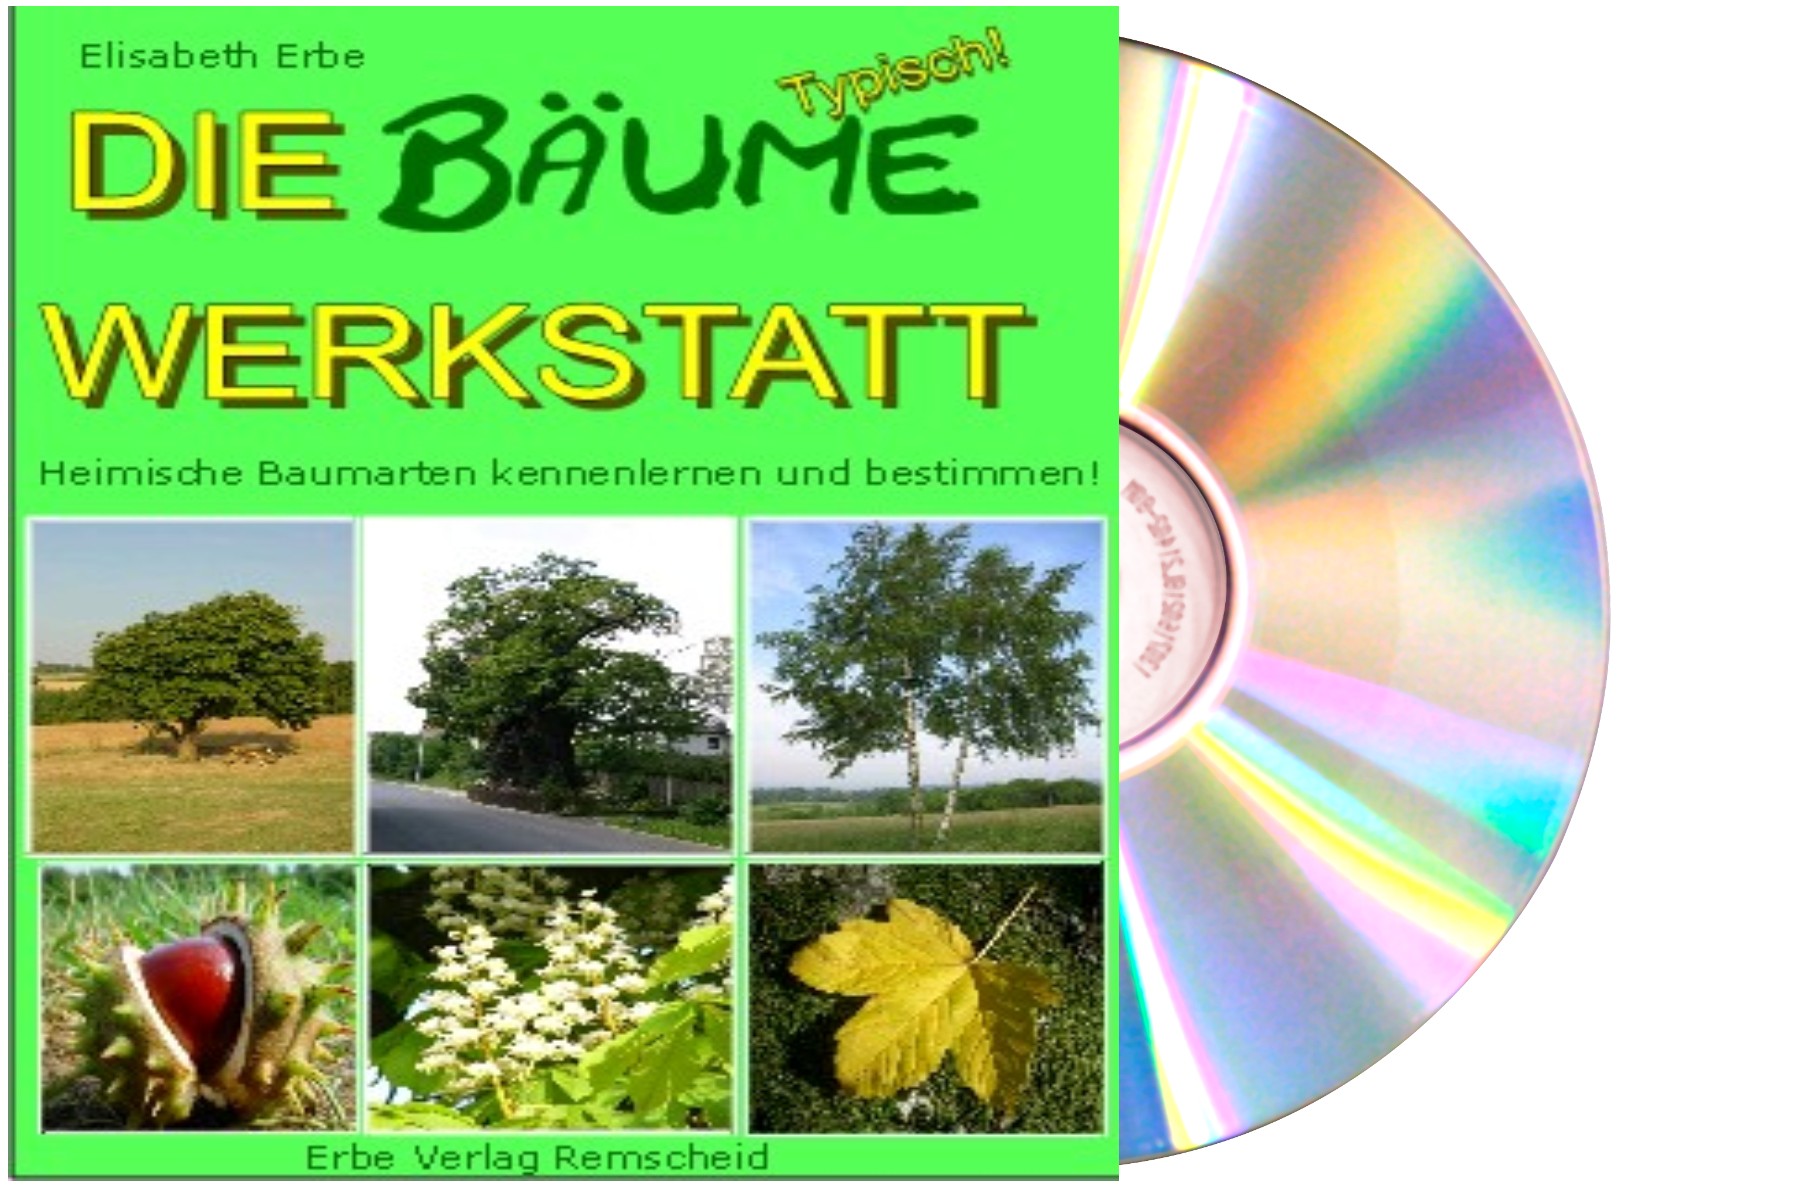 Bäume Werkstatt Grundschule Unterrichtsmaterial Arbeitsblätter Kopiervorlagen auf CD